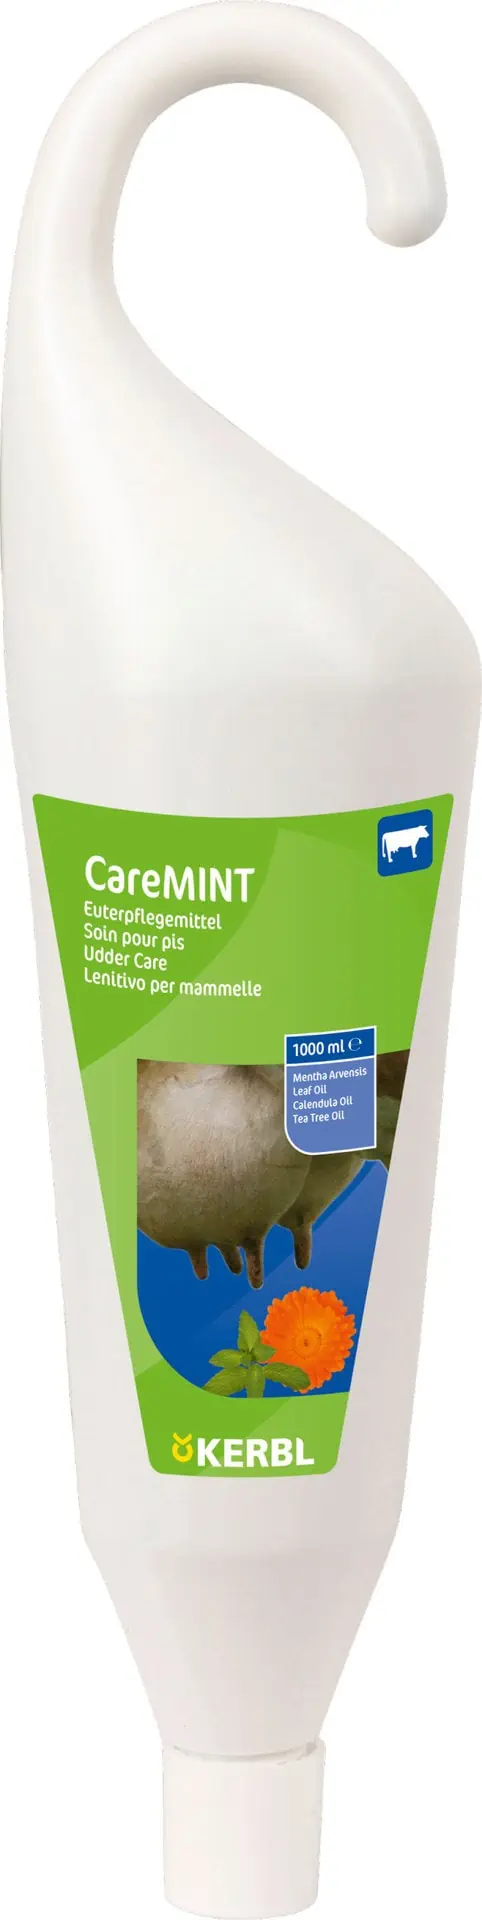 Tőgyápoló szer CareMINT 1000 ml-es függő flakon